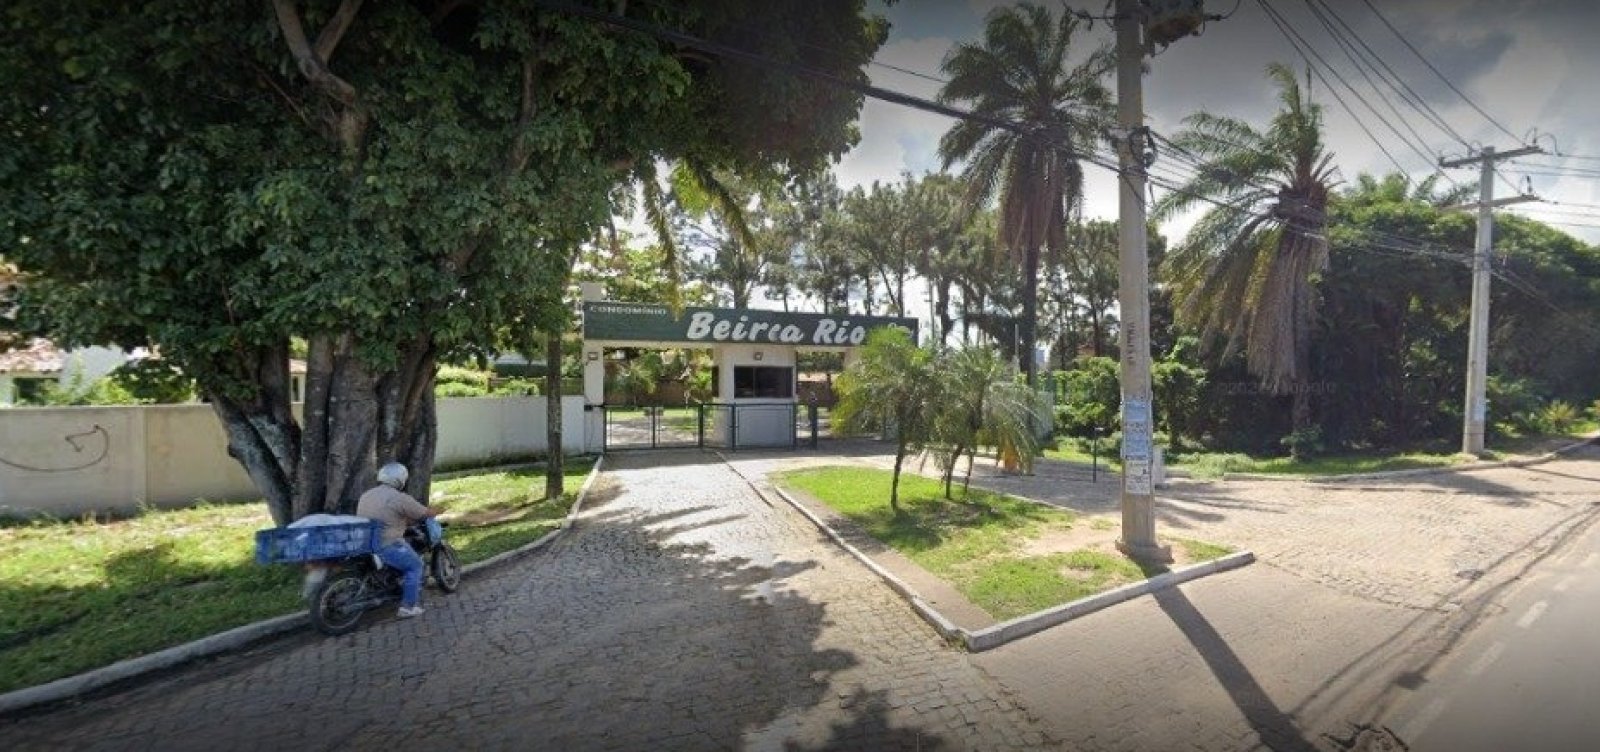 Após polêmica com condomínio, prefeitura de Lauro de Freitas diz que exigirá derrubada de portão